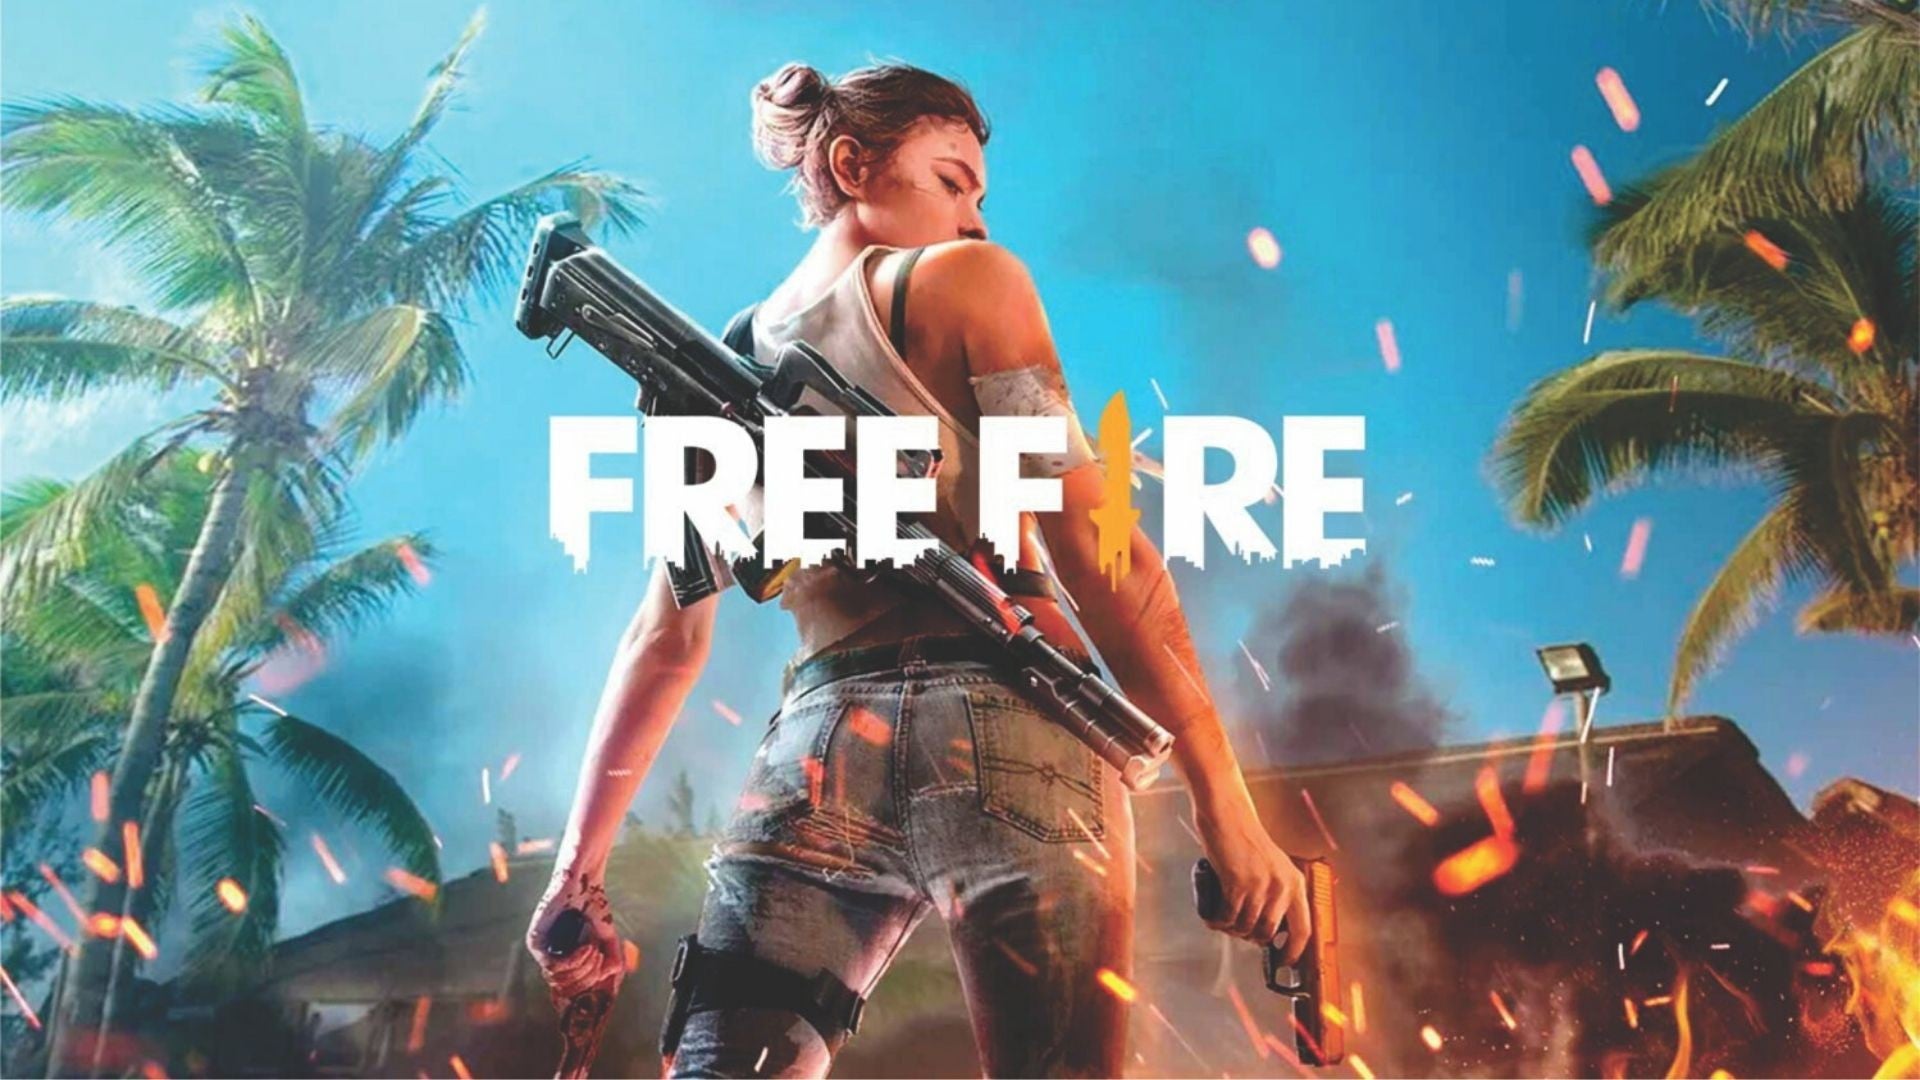 Imagem para Free Fire - Lista de promo codes (Abril 2022)